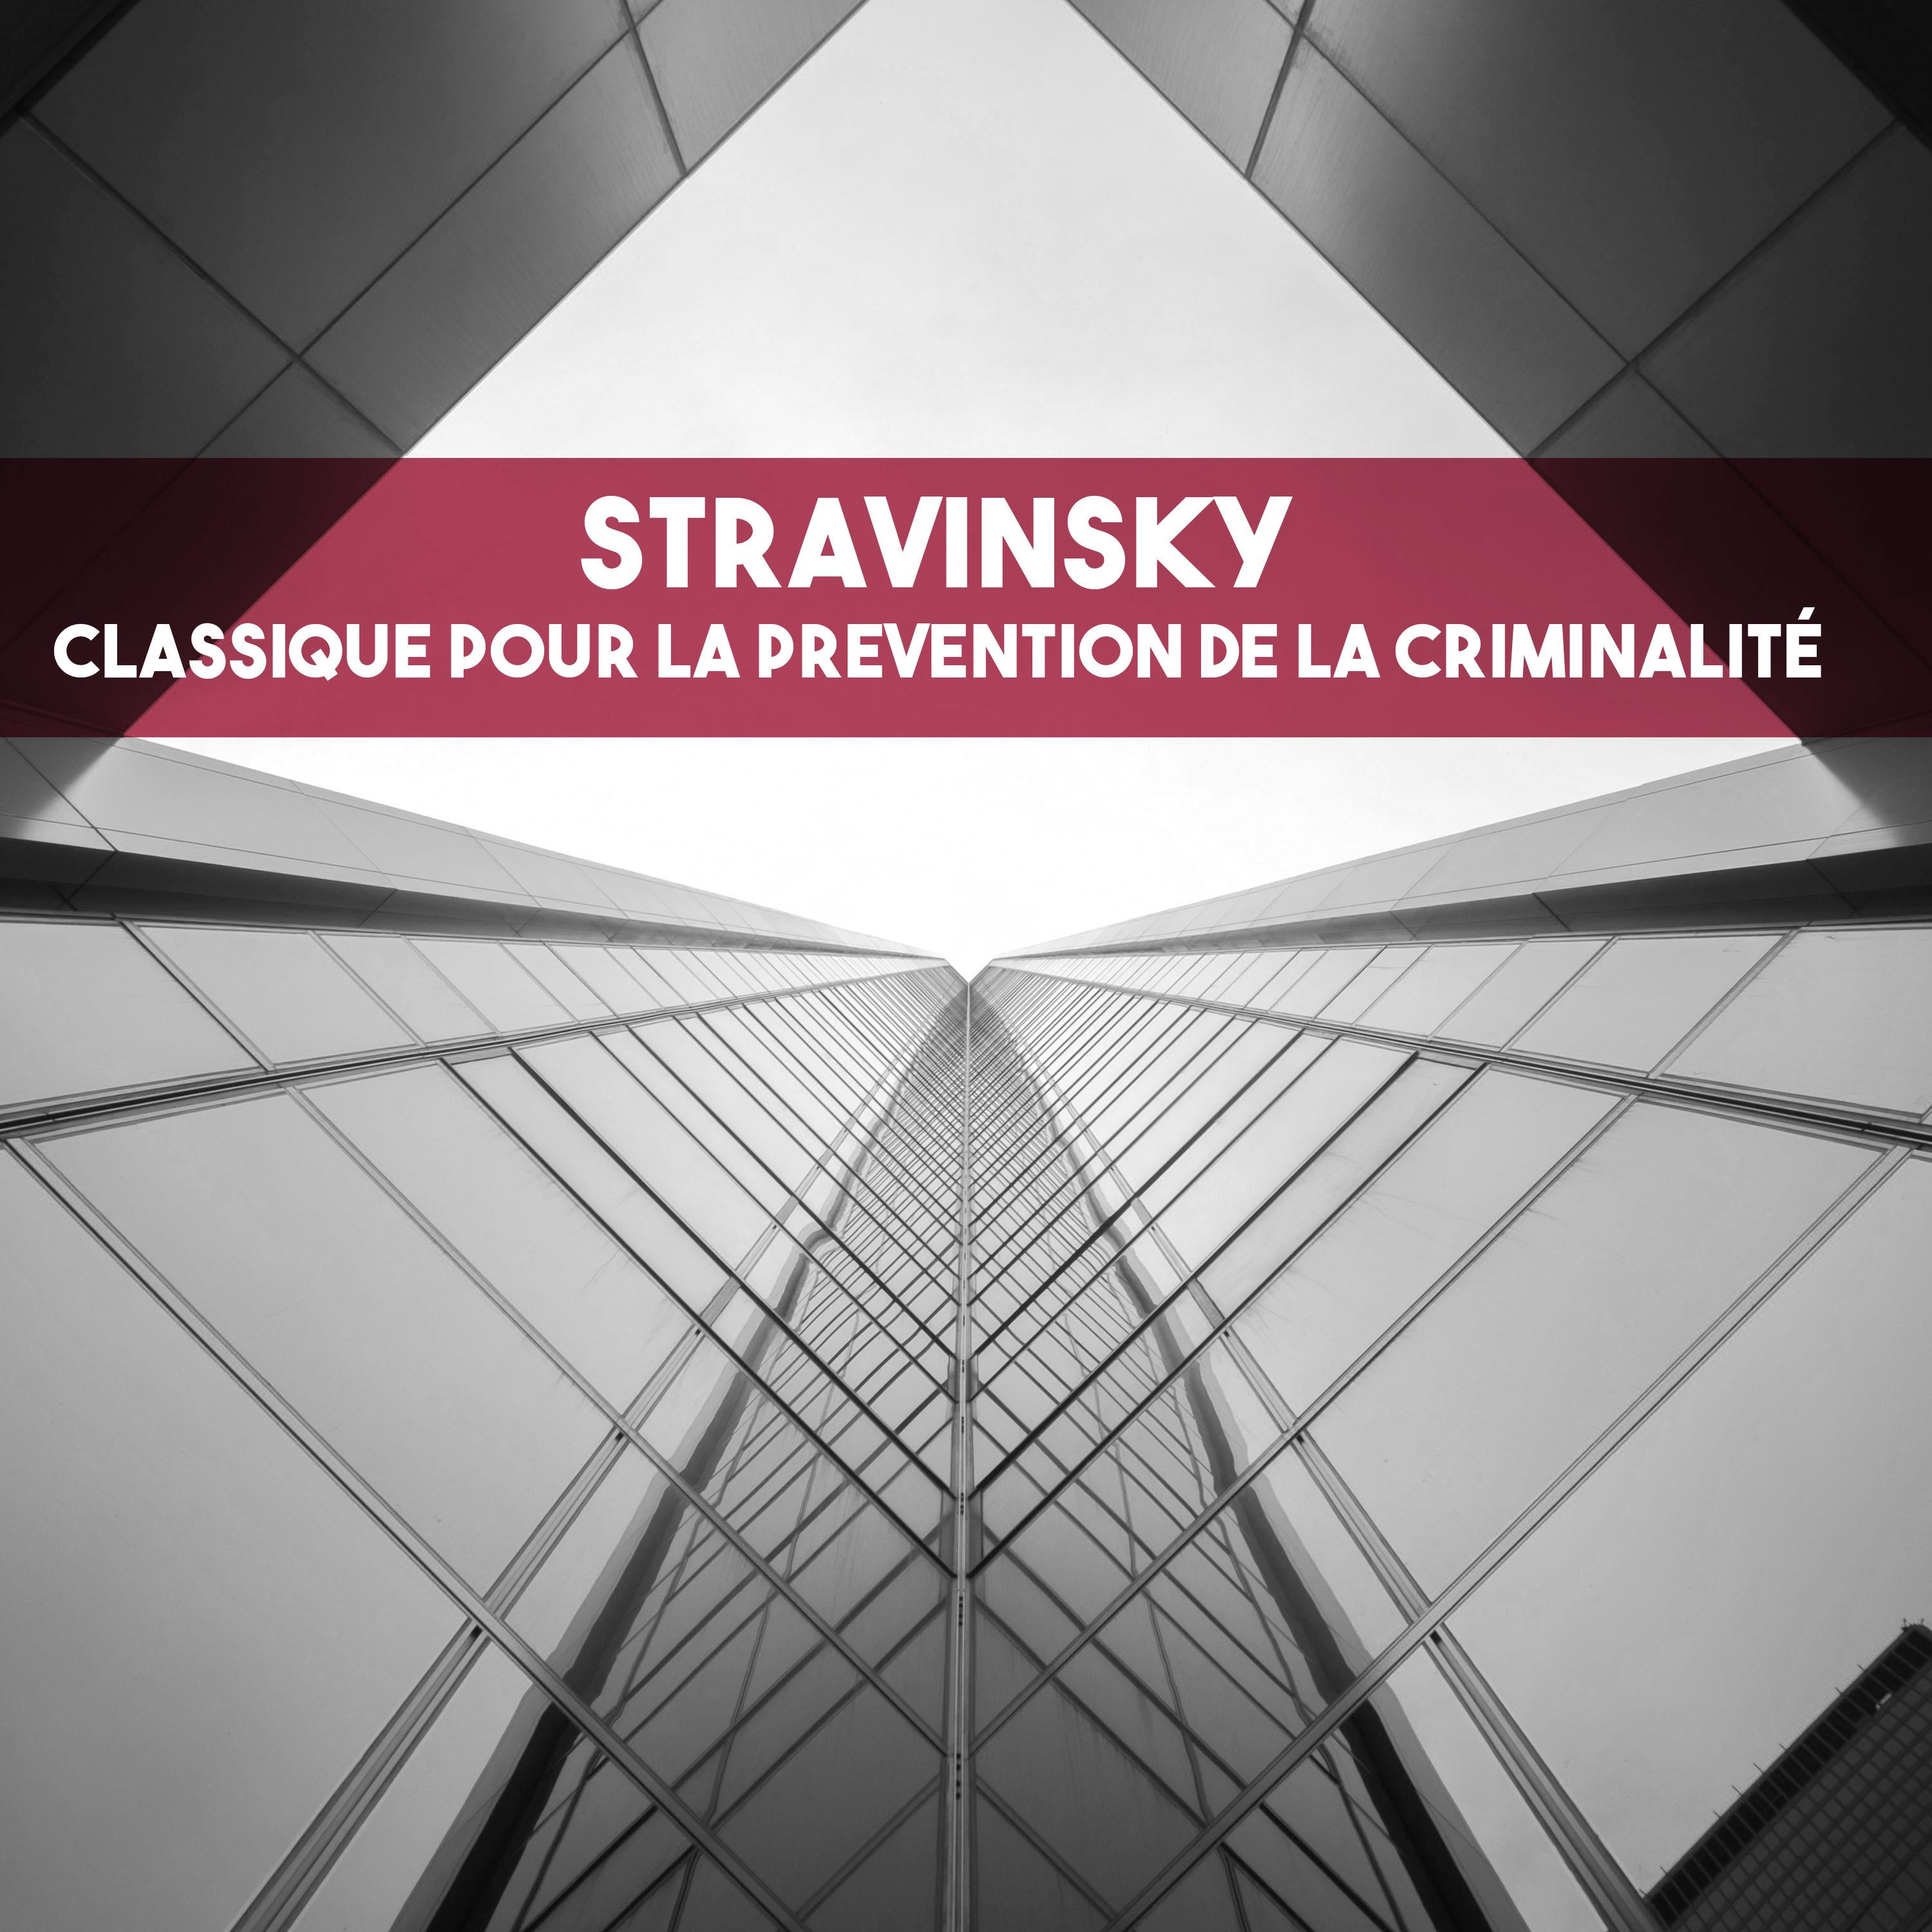 Stravinsky: Classique pour la prevention de la criminalite